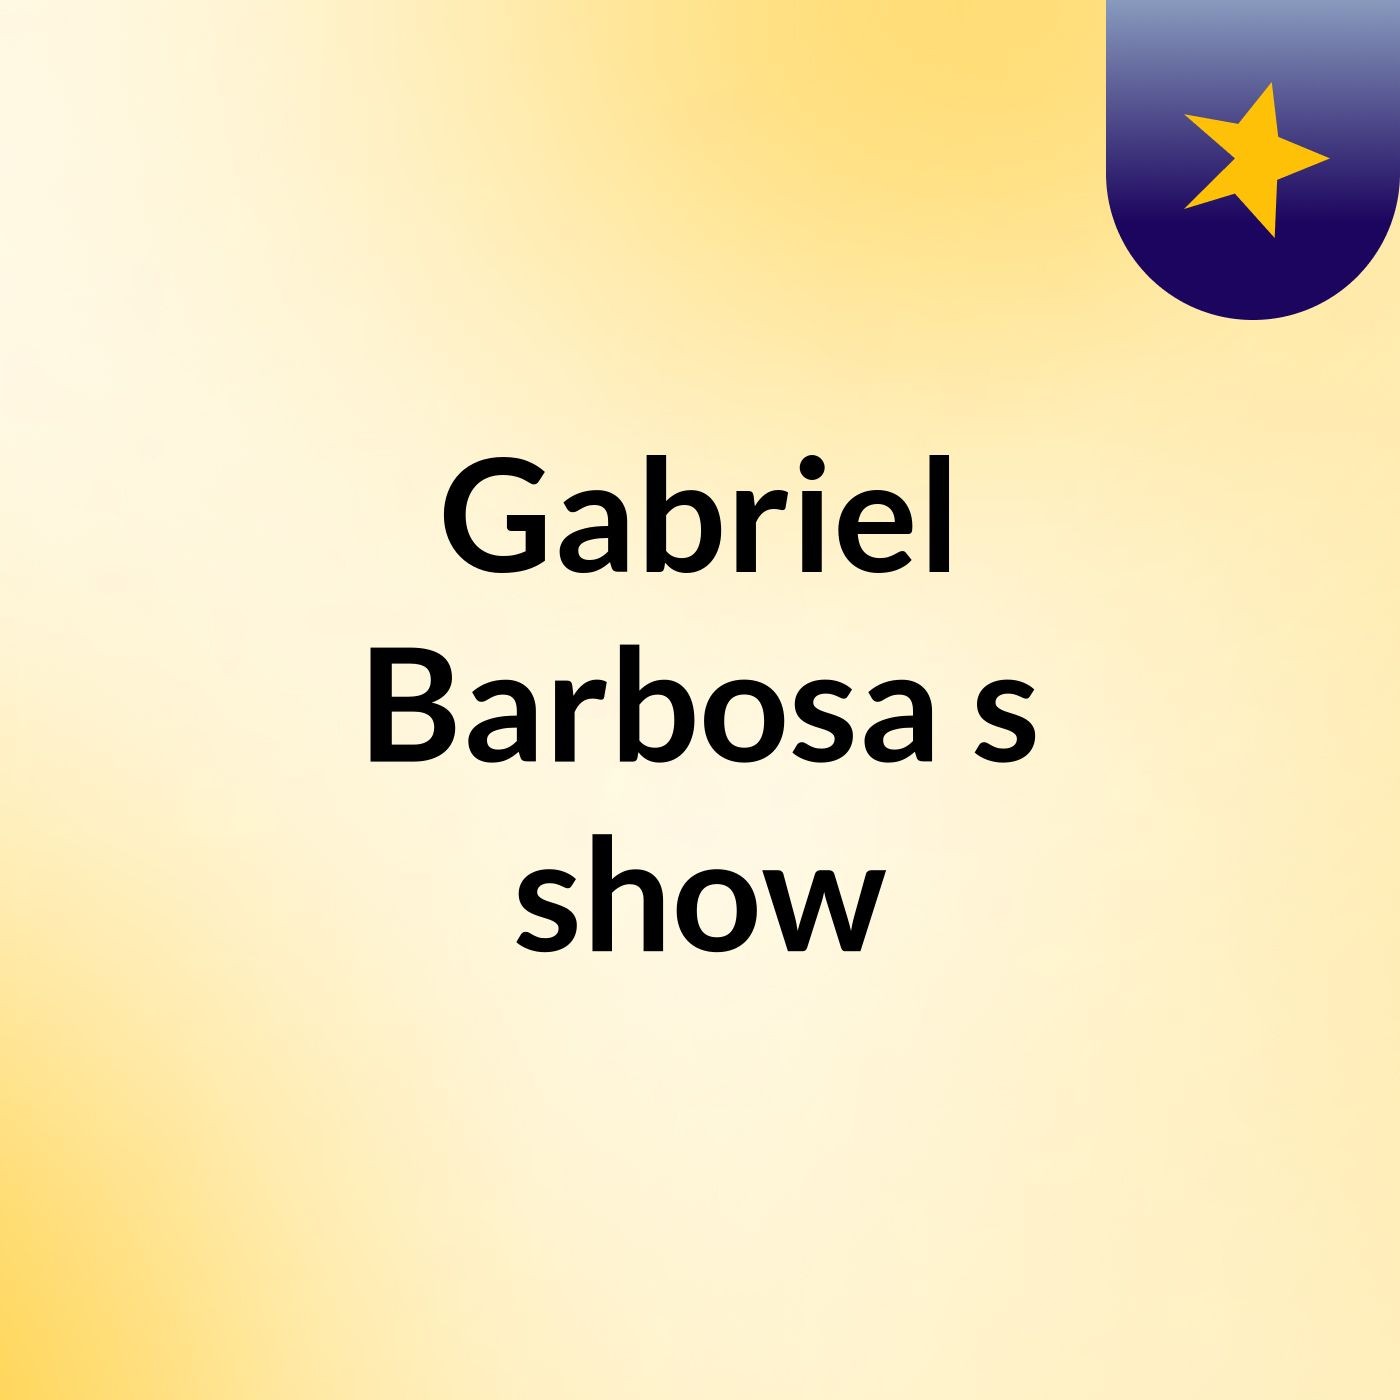 Gabriel Barbosa's show